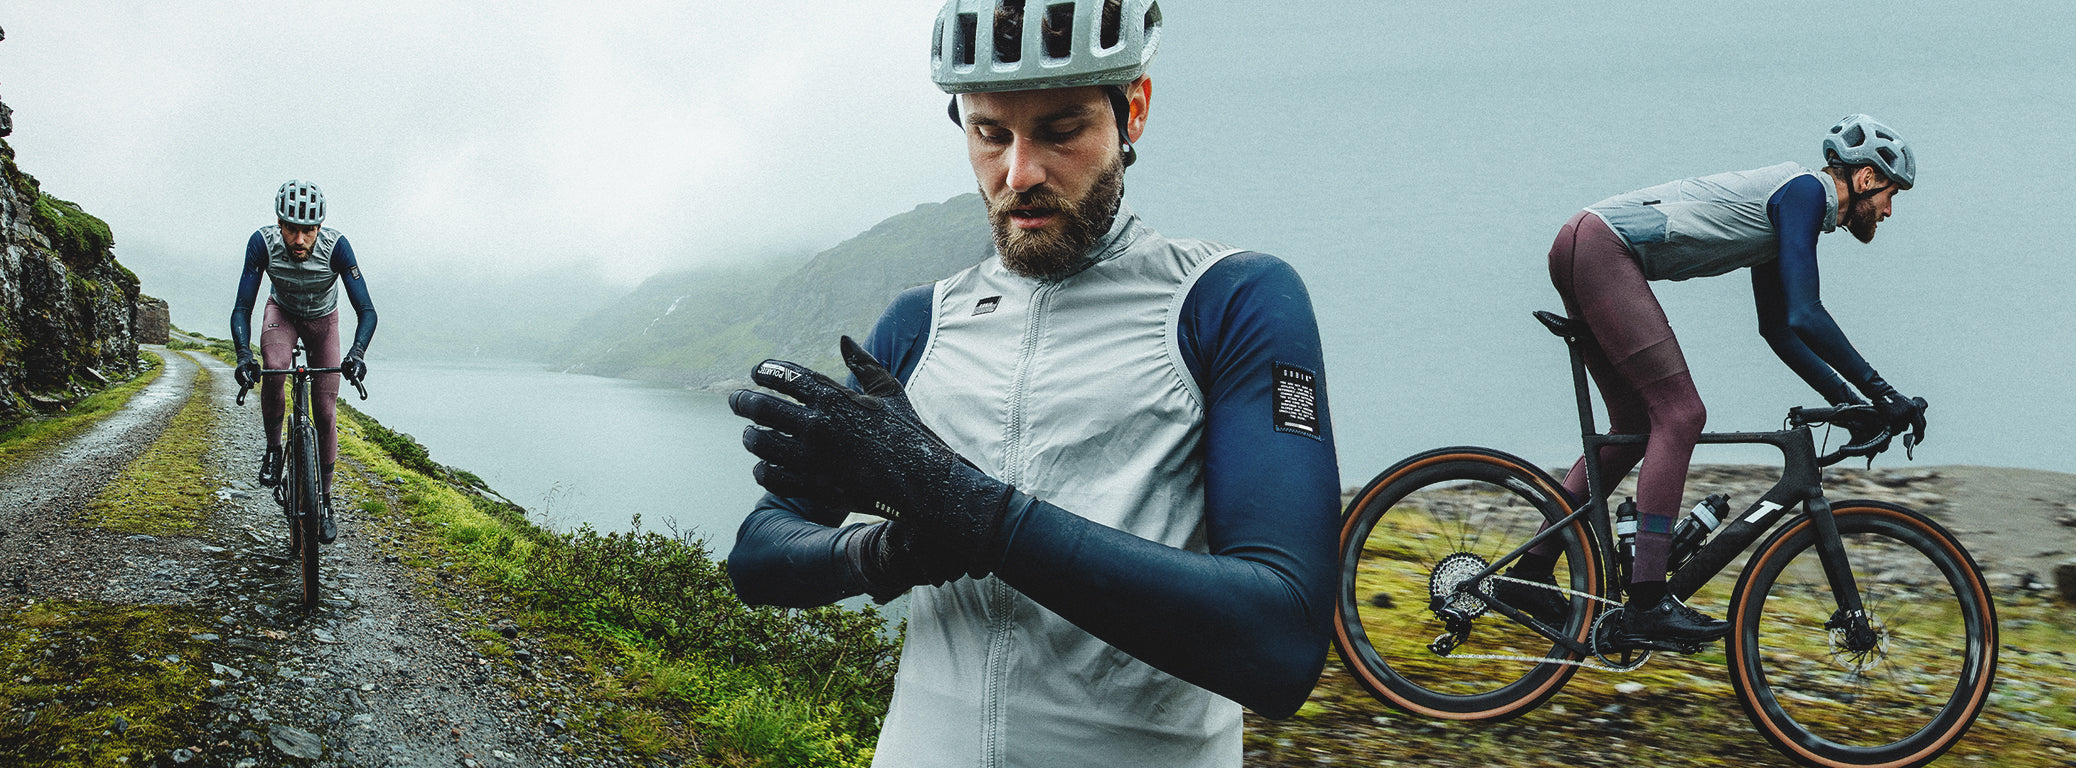 Diferentes planos de ciclista con ropa Gobik para los climas más frios, viste guantes, chaleco, hyder y absolute.